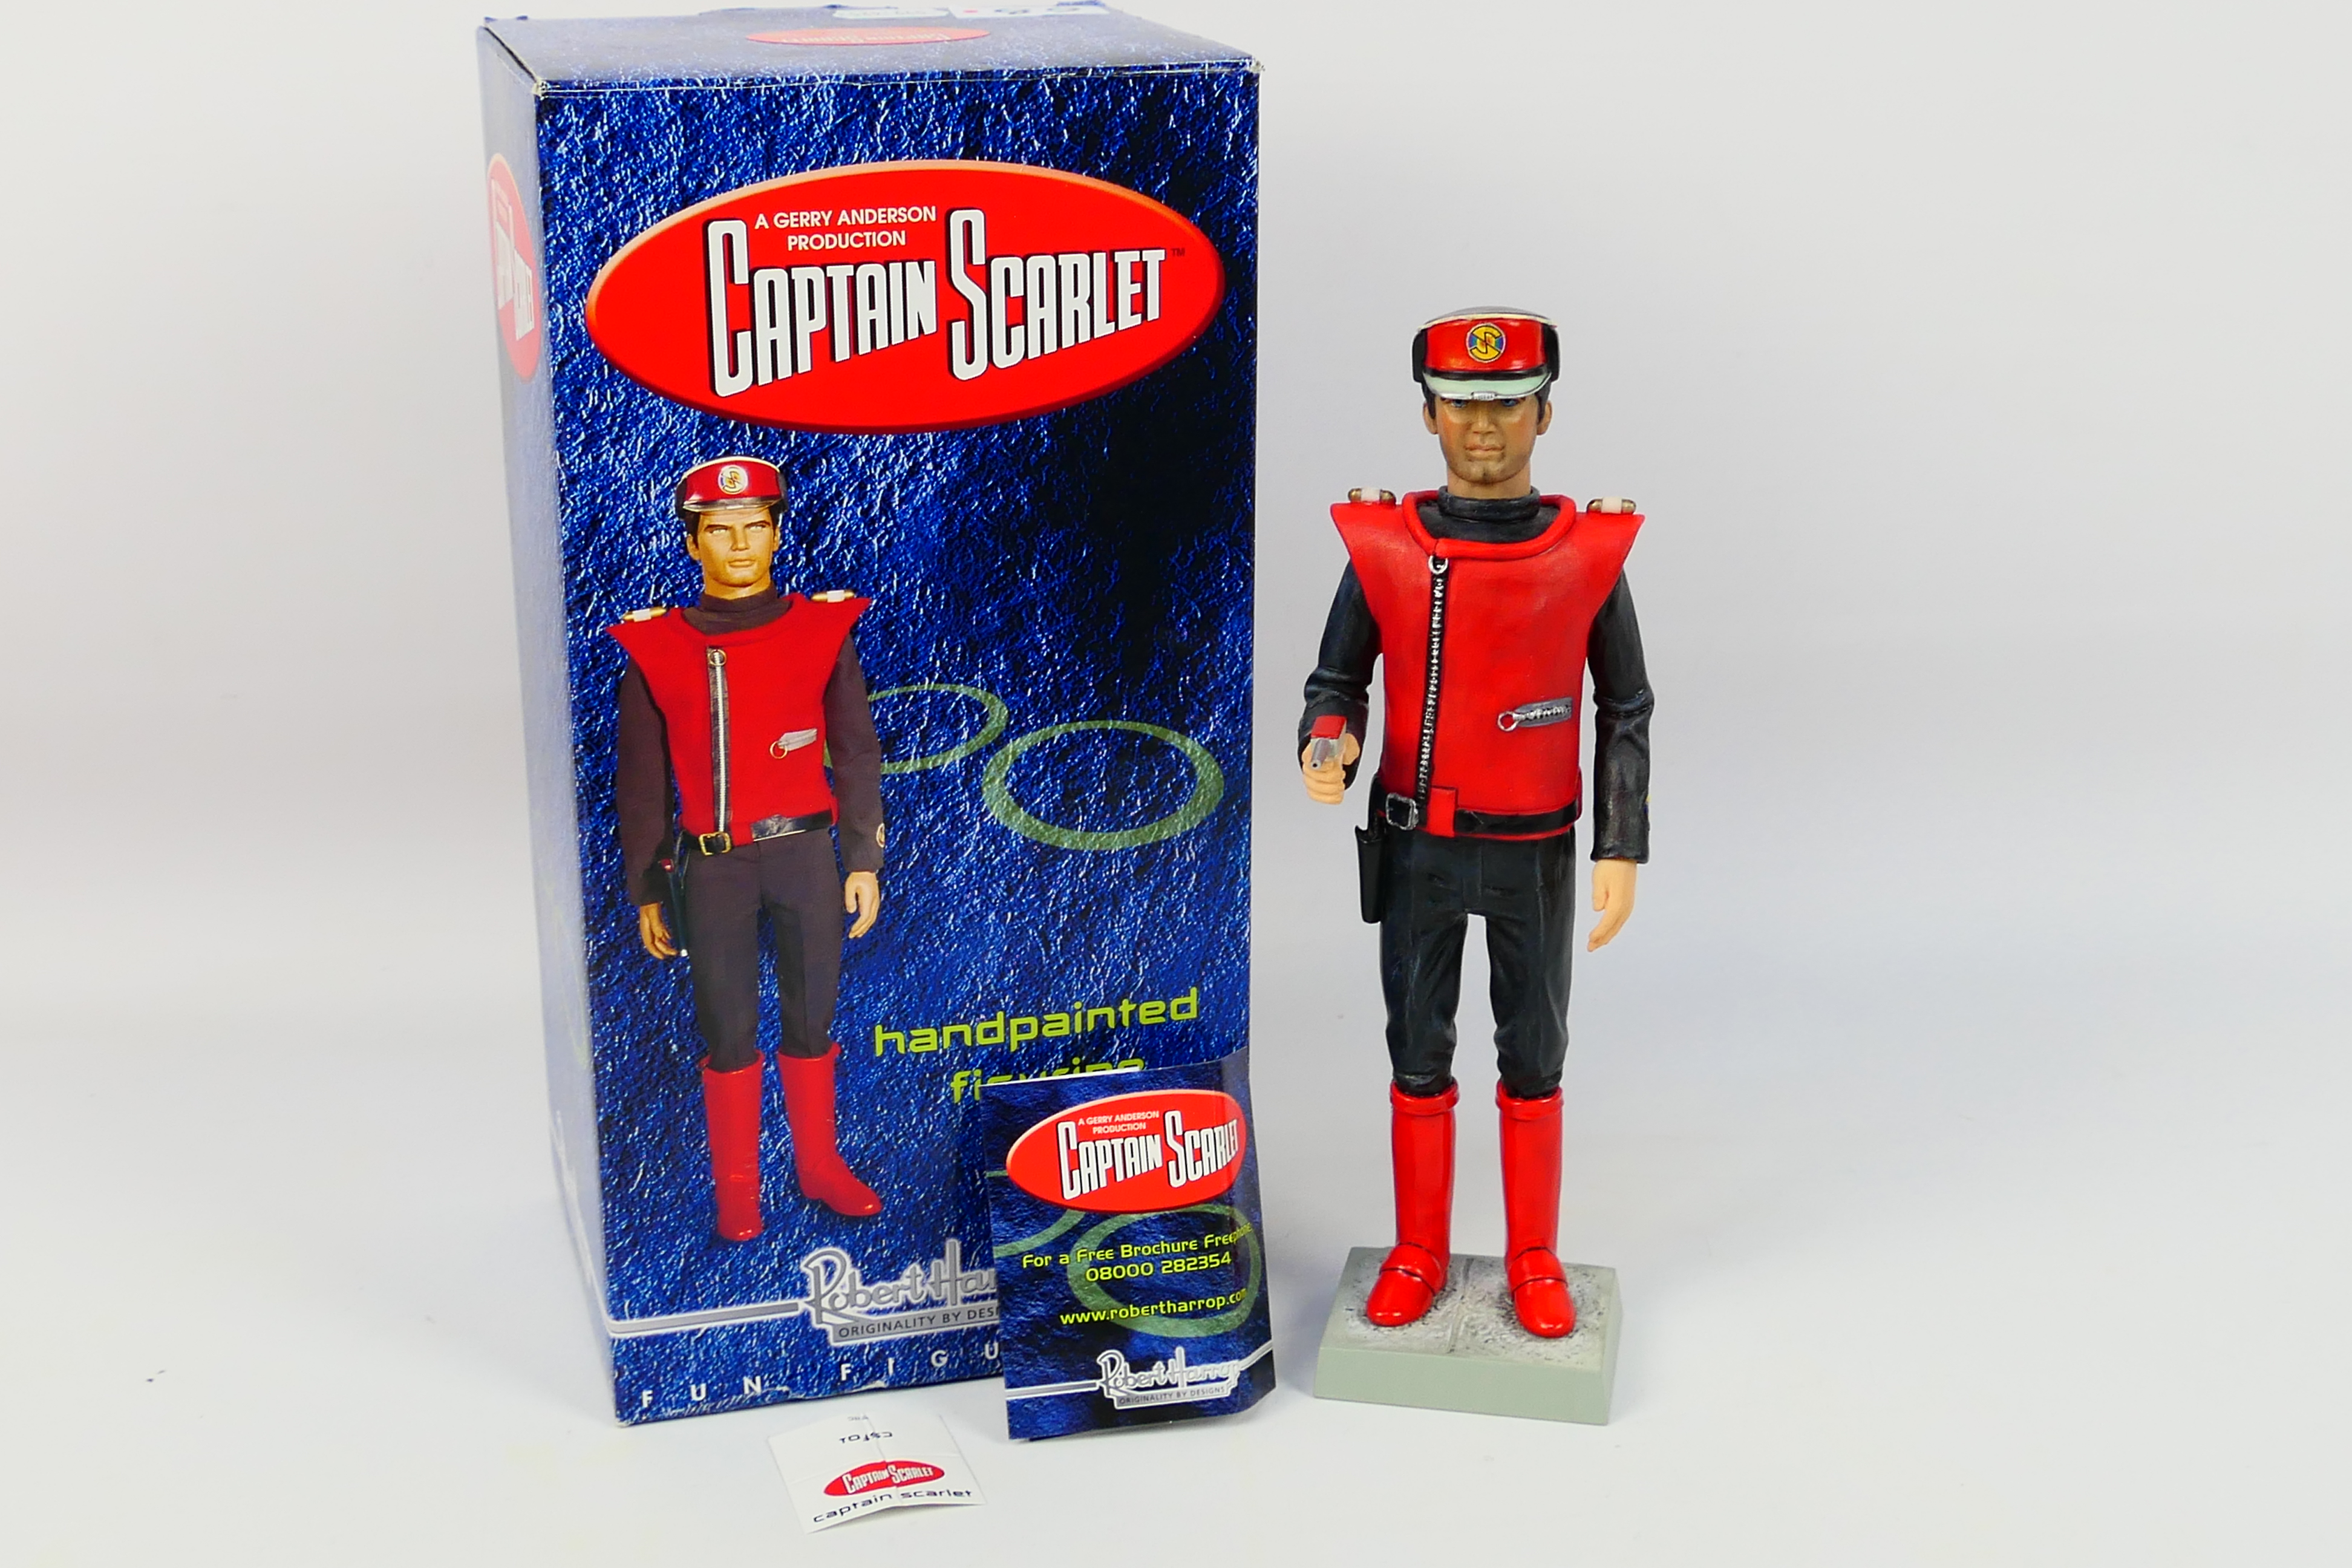 Robert Harrop - Captain Scarlet - A Robert Harrop resin figurine of Captain Scarlet(SCF01).